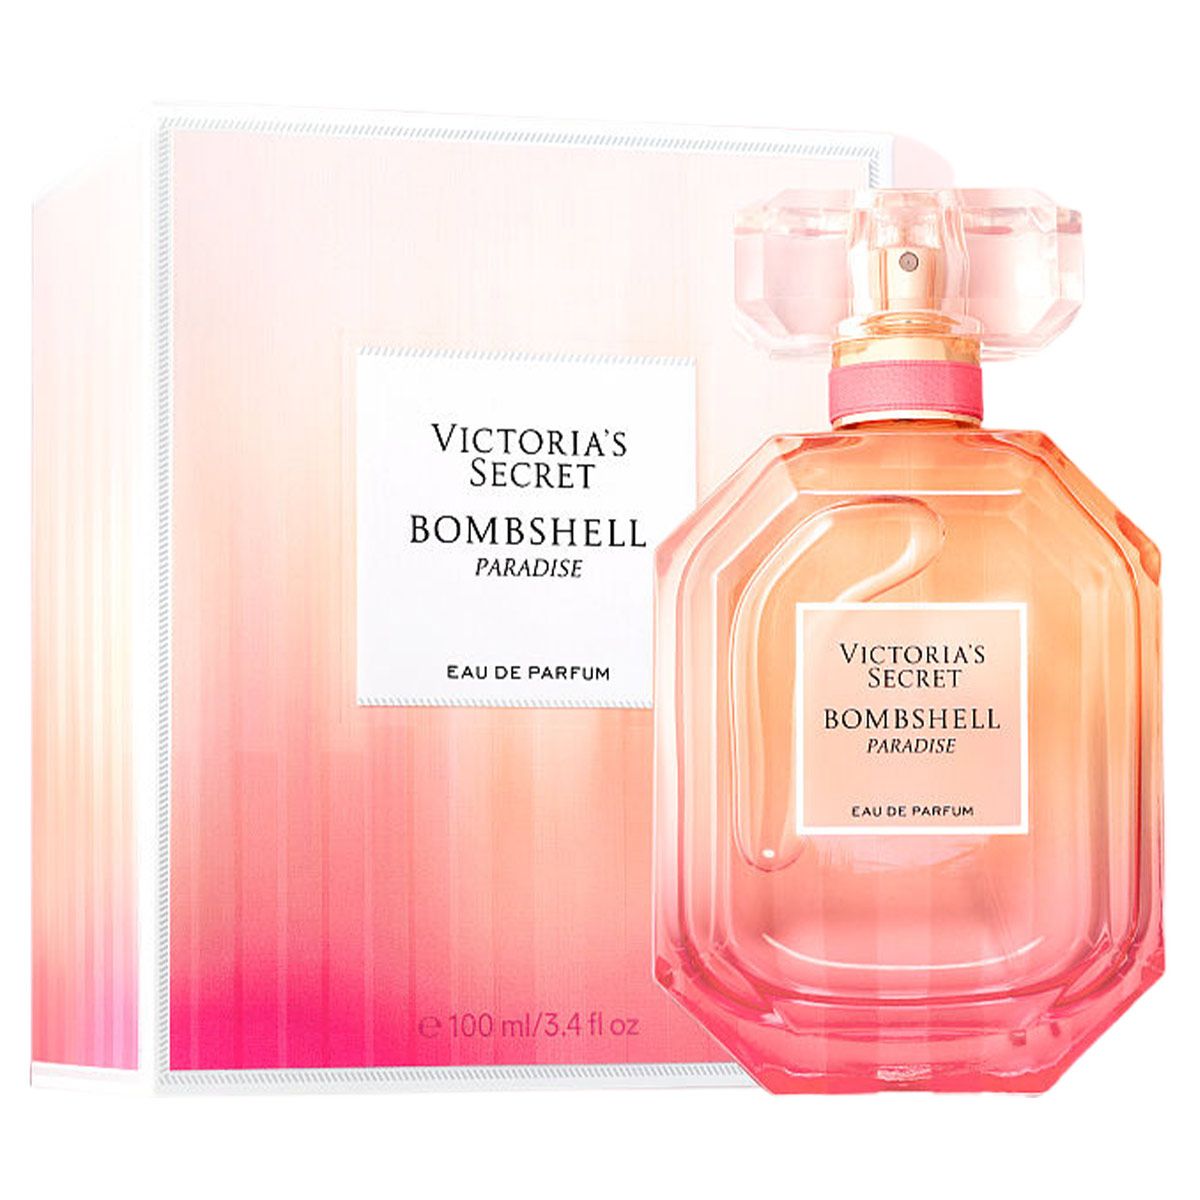  Victoria's Secret Bombshell Paradise Eau de Parfum 